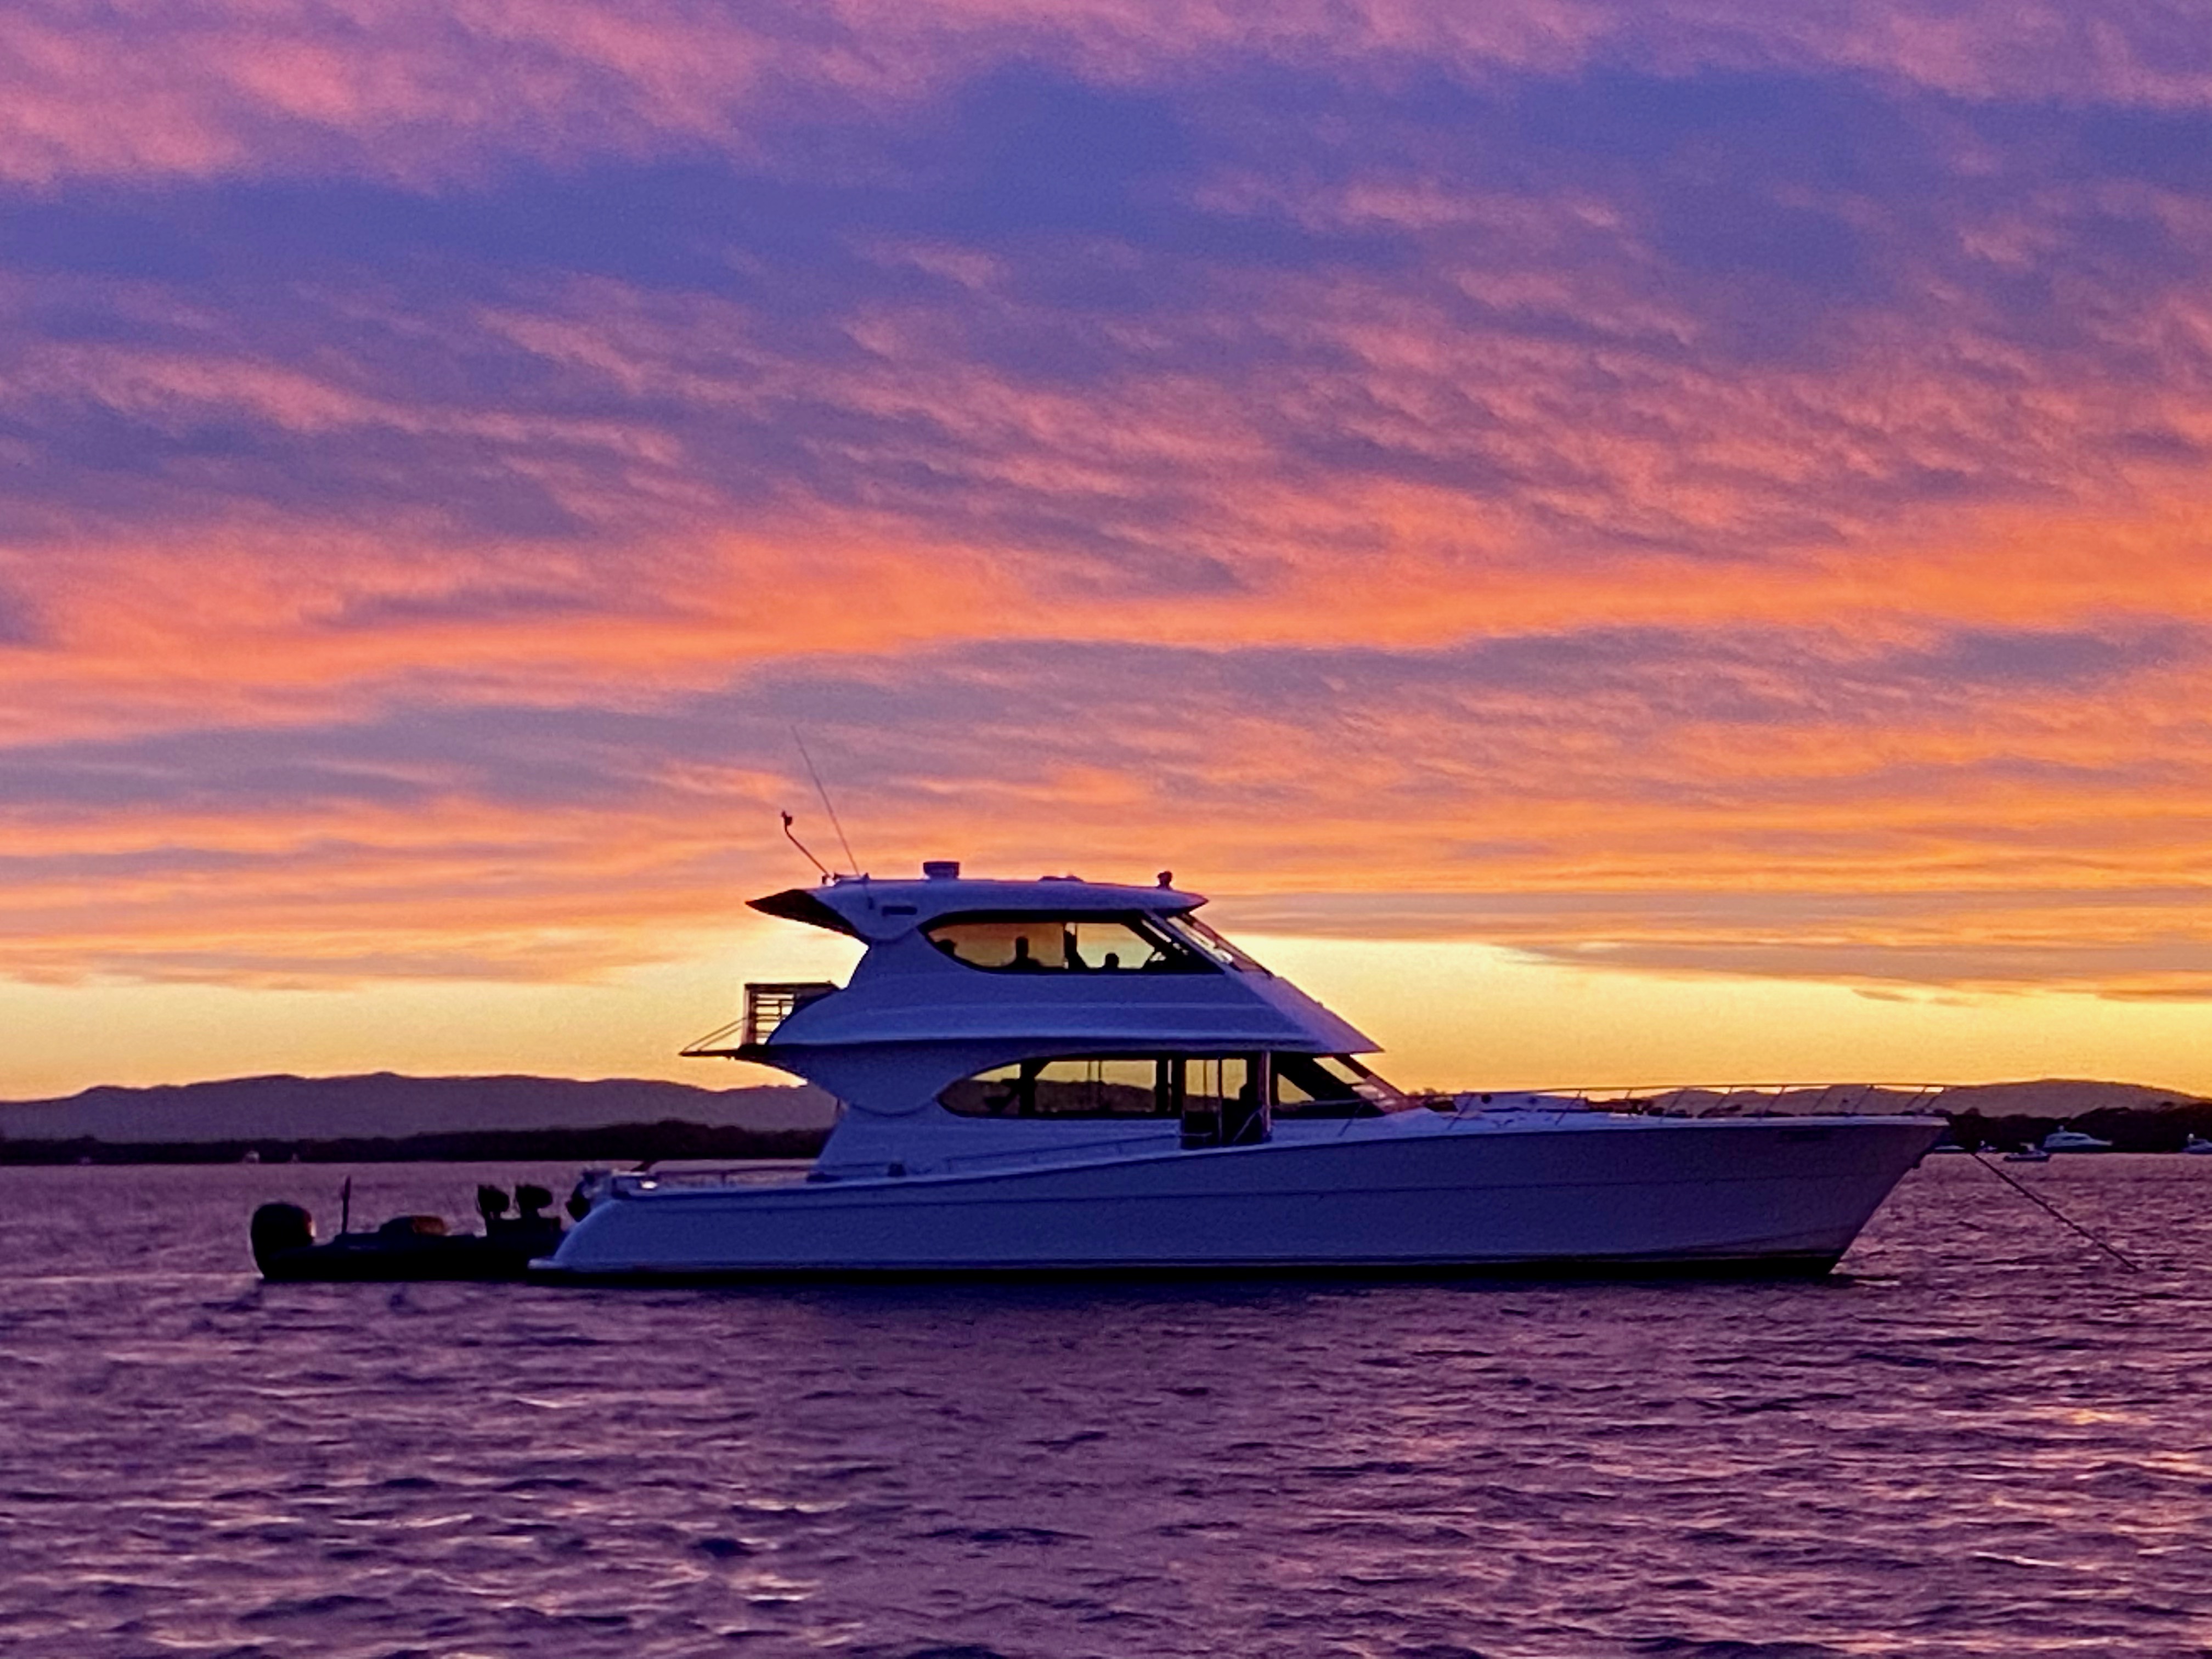 boat cruise on sunset